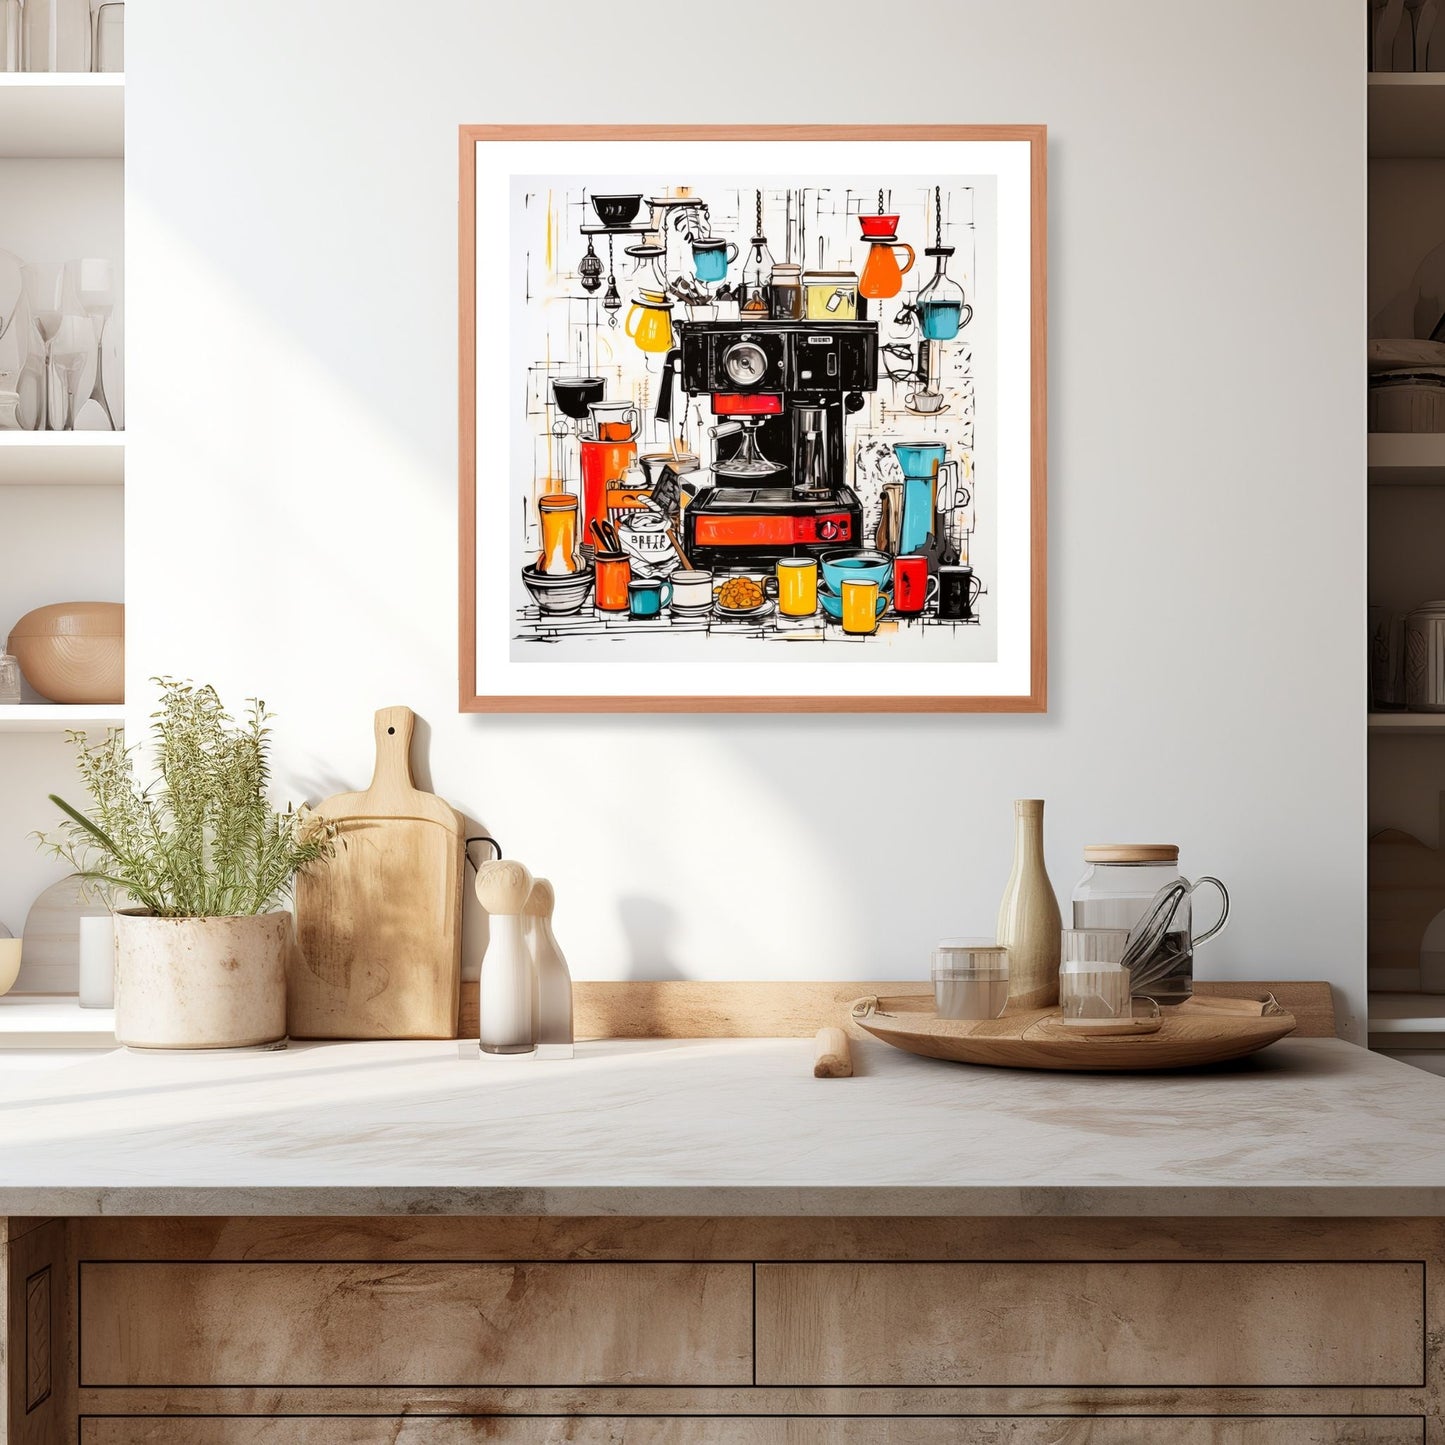 Denne grafiske illustrasjonen viser en sjarmerende scene med en kaffemaskin omgitt av mange kopper og fat, alt håndtegnet i levende farger. Illustrasjonen viser motivet som plakat i ramme som henger over en kjøkkenbenk.